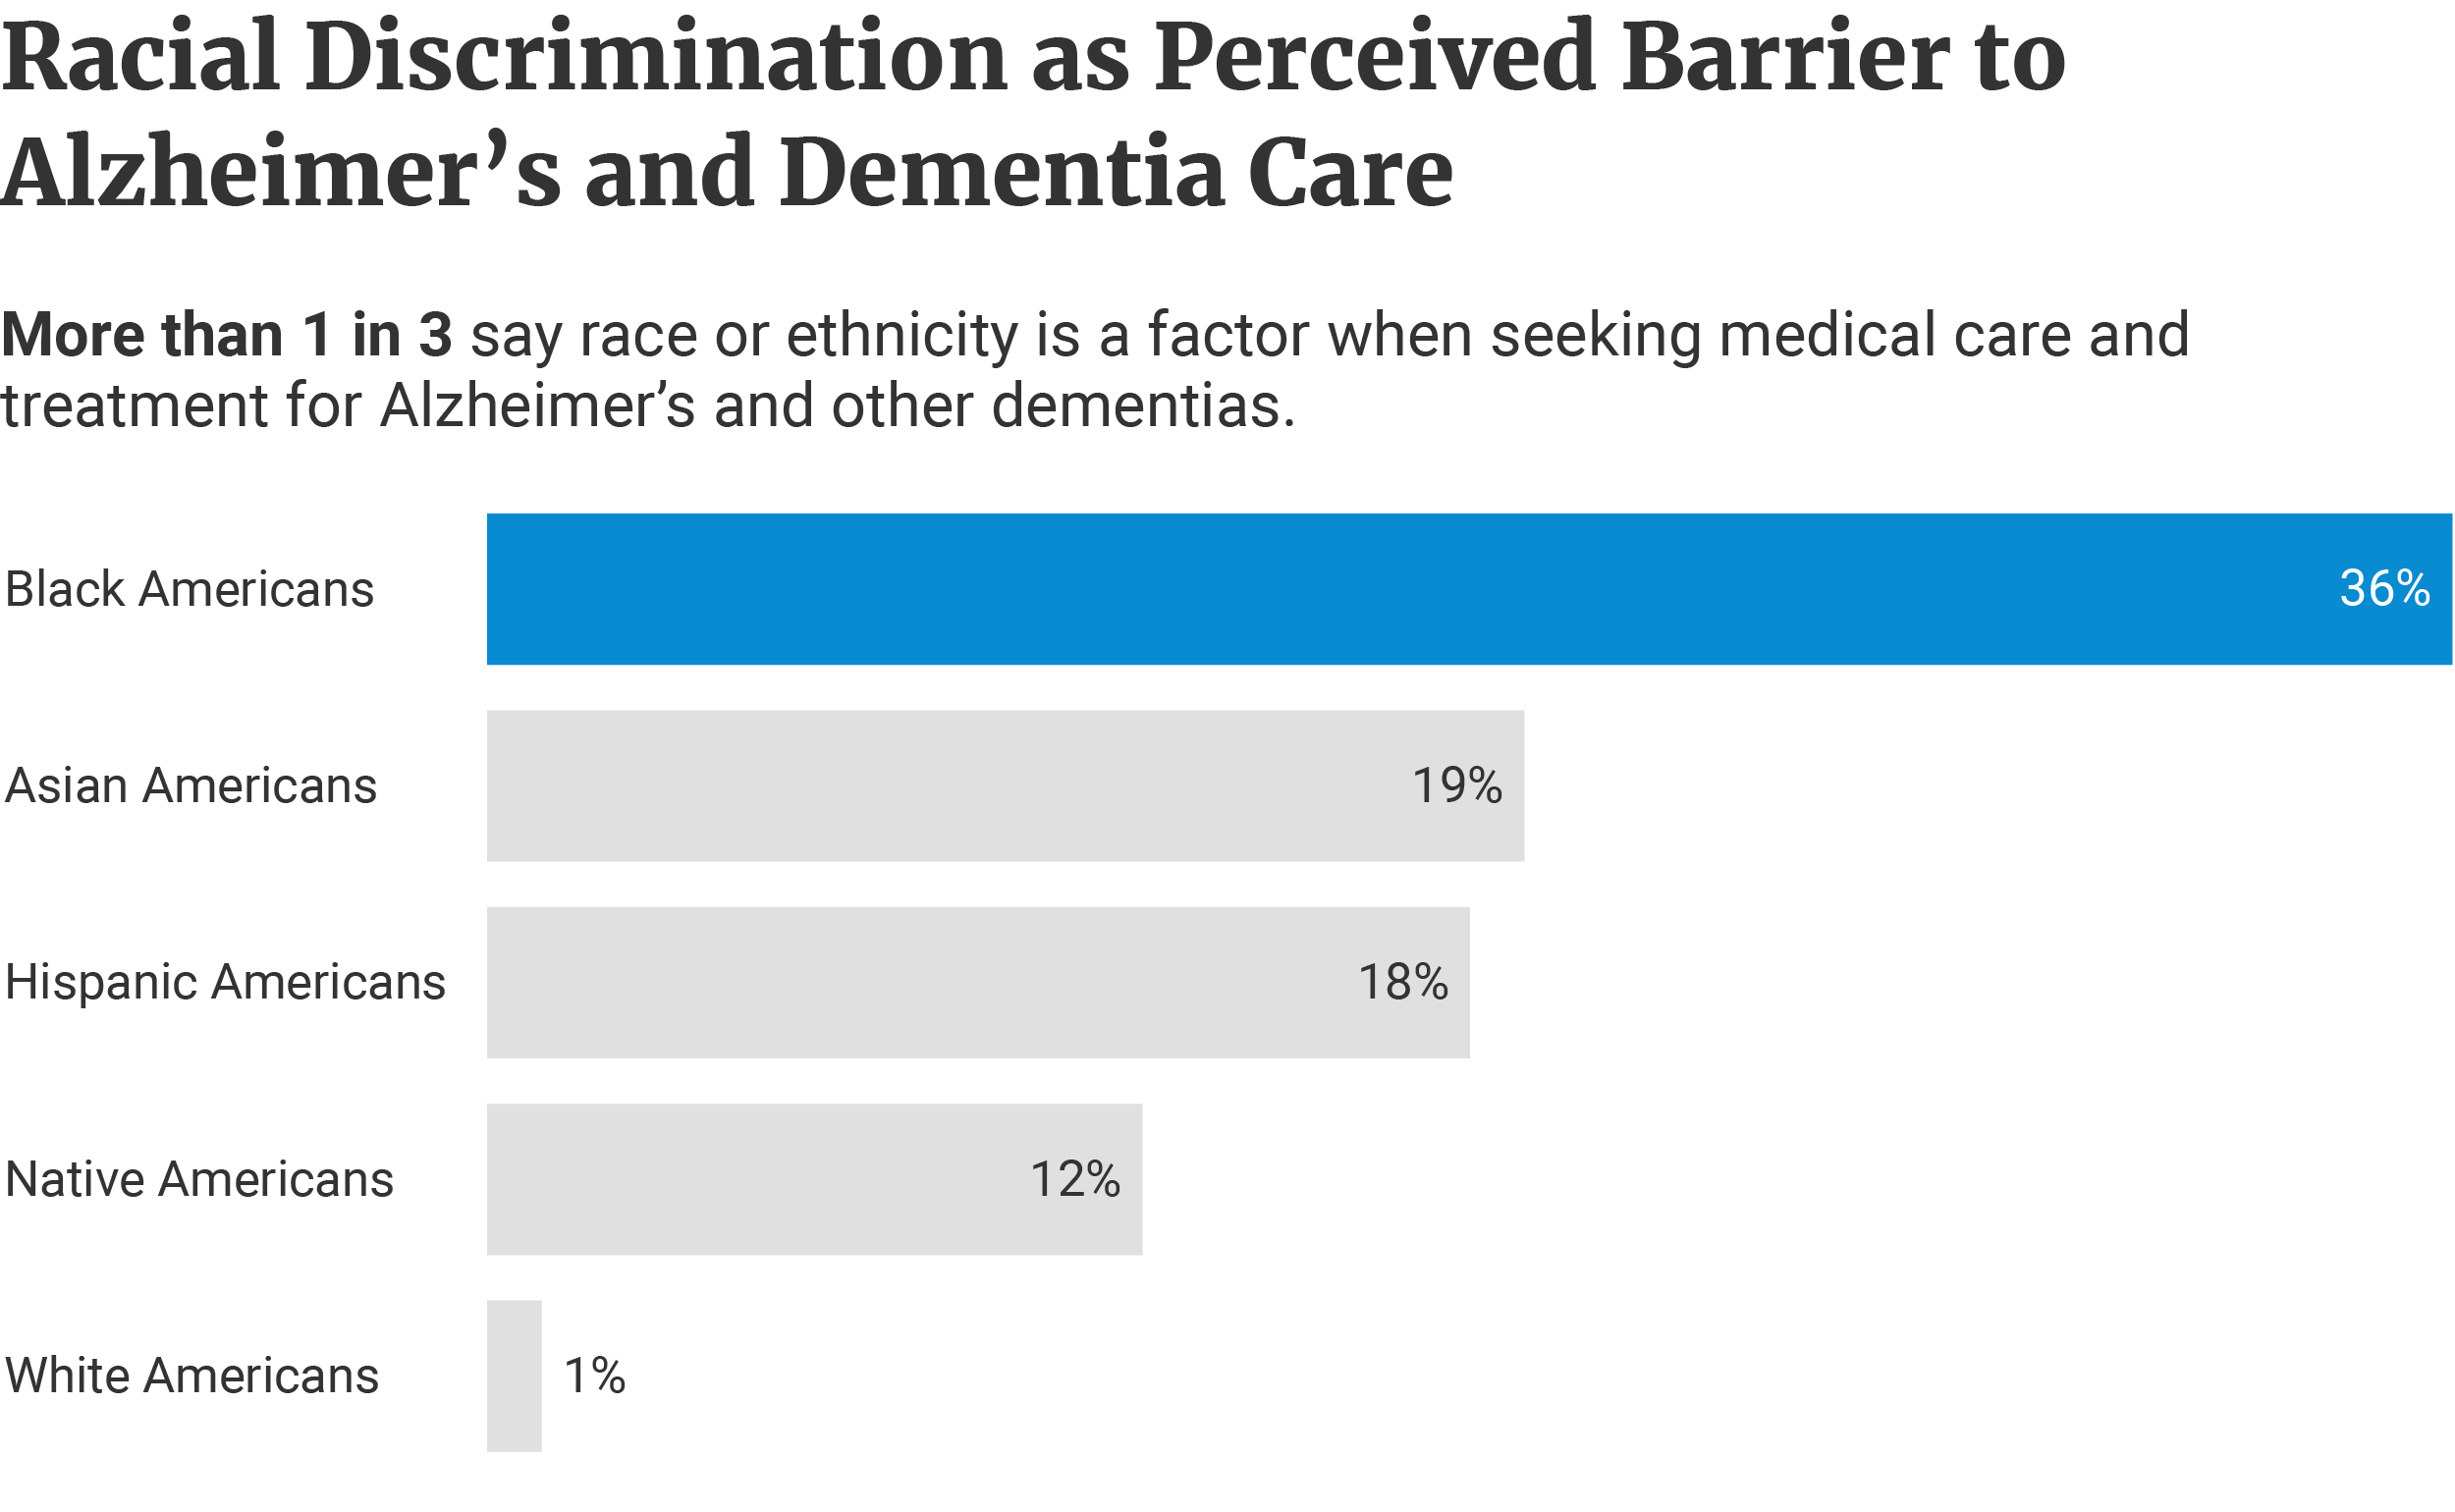 Horizontal bars showing more Blacks perceive race as a barrier in seeking medical care at 36%, Asians at 19%, Hispanics at 18%, and Natives at 12% than Whites at 1%.